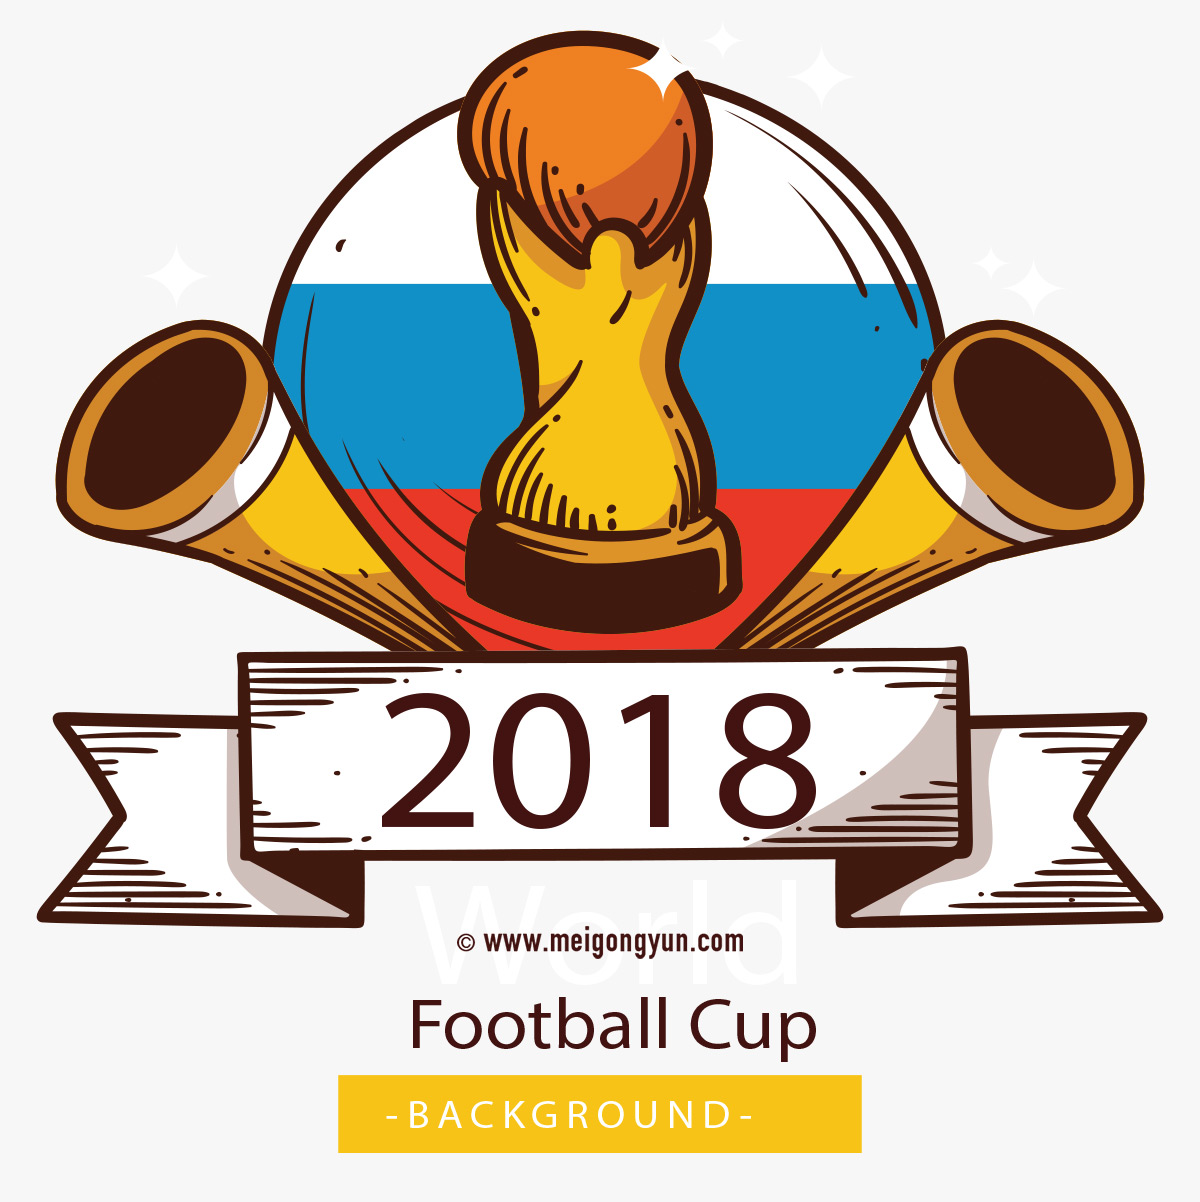 2018俄罗斯世界杯国际足球比赛海报挂画设计模板AI矢量素材